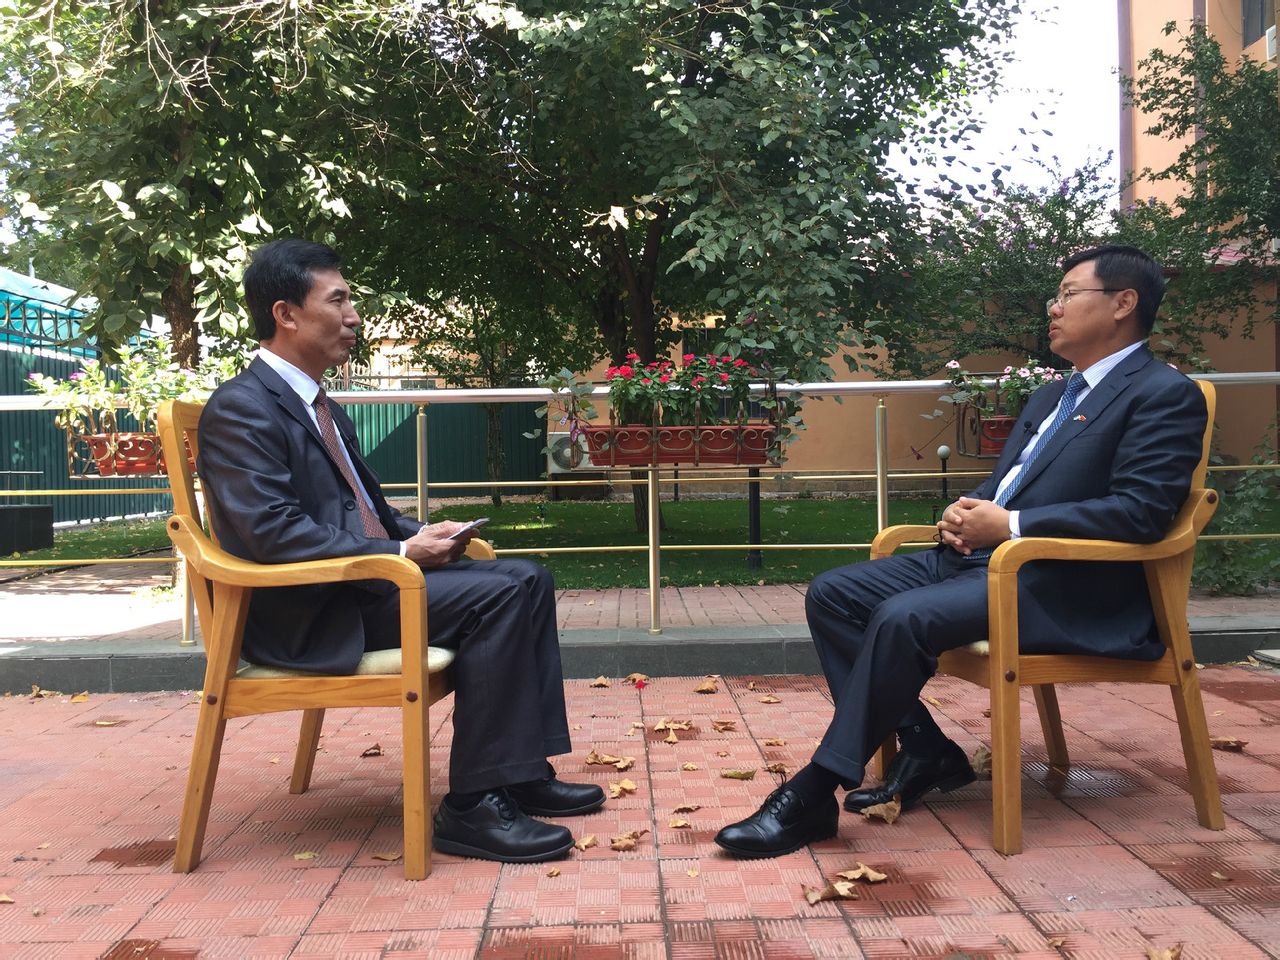 採訪中國駐烏茲別克斯坦大使孫立傑